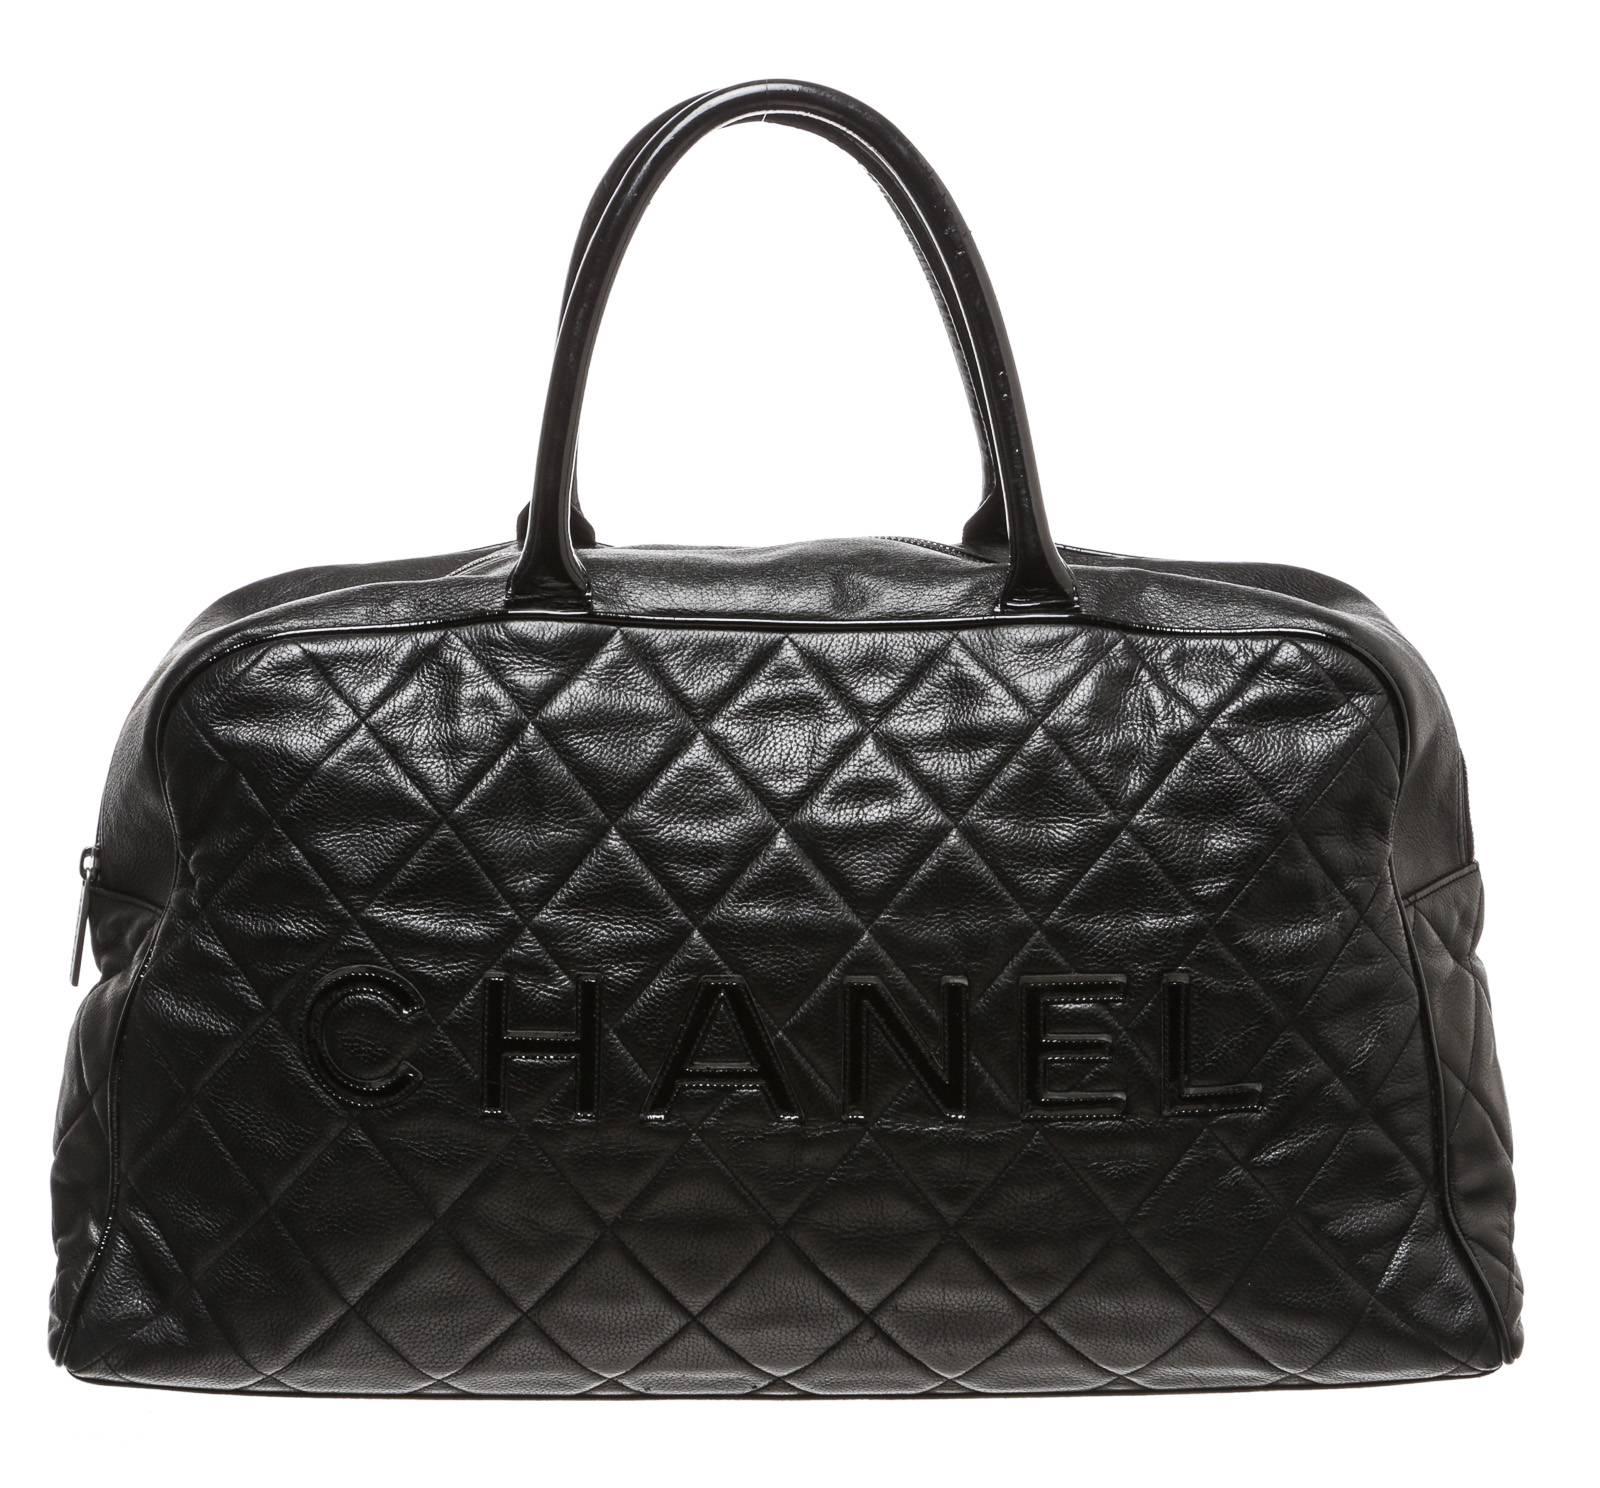 Chanel Black Caviar Travel Bag In Good Condition For Sale In Corona Del Mar, CA